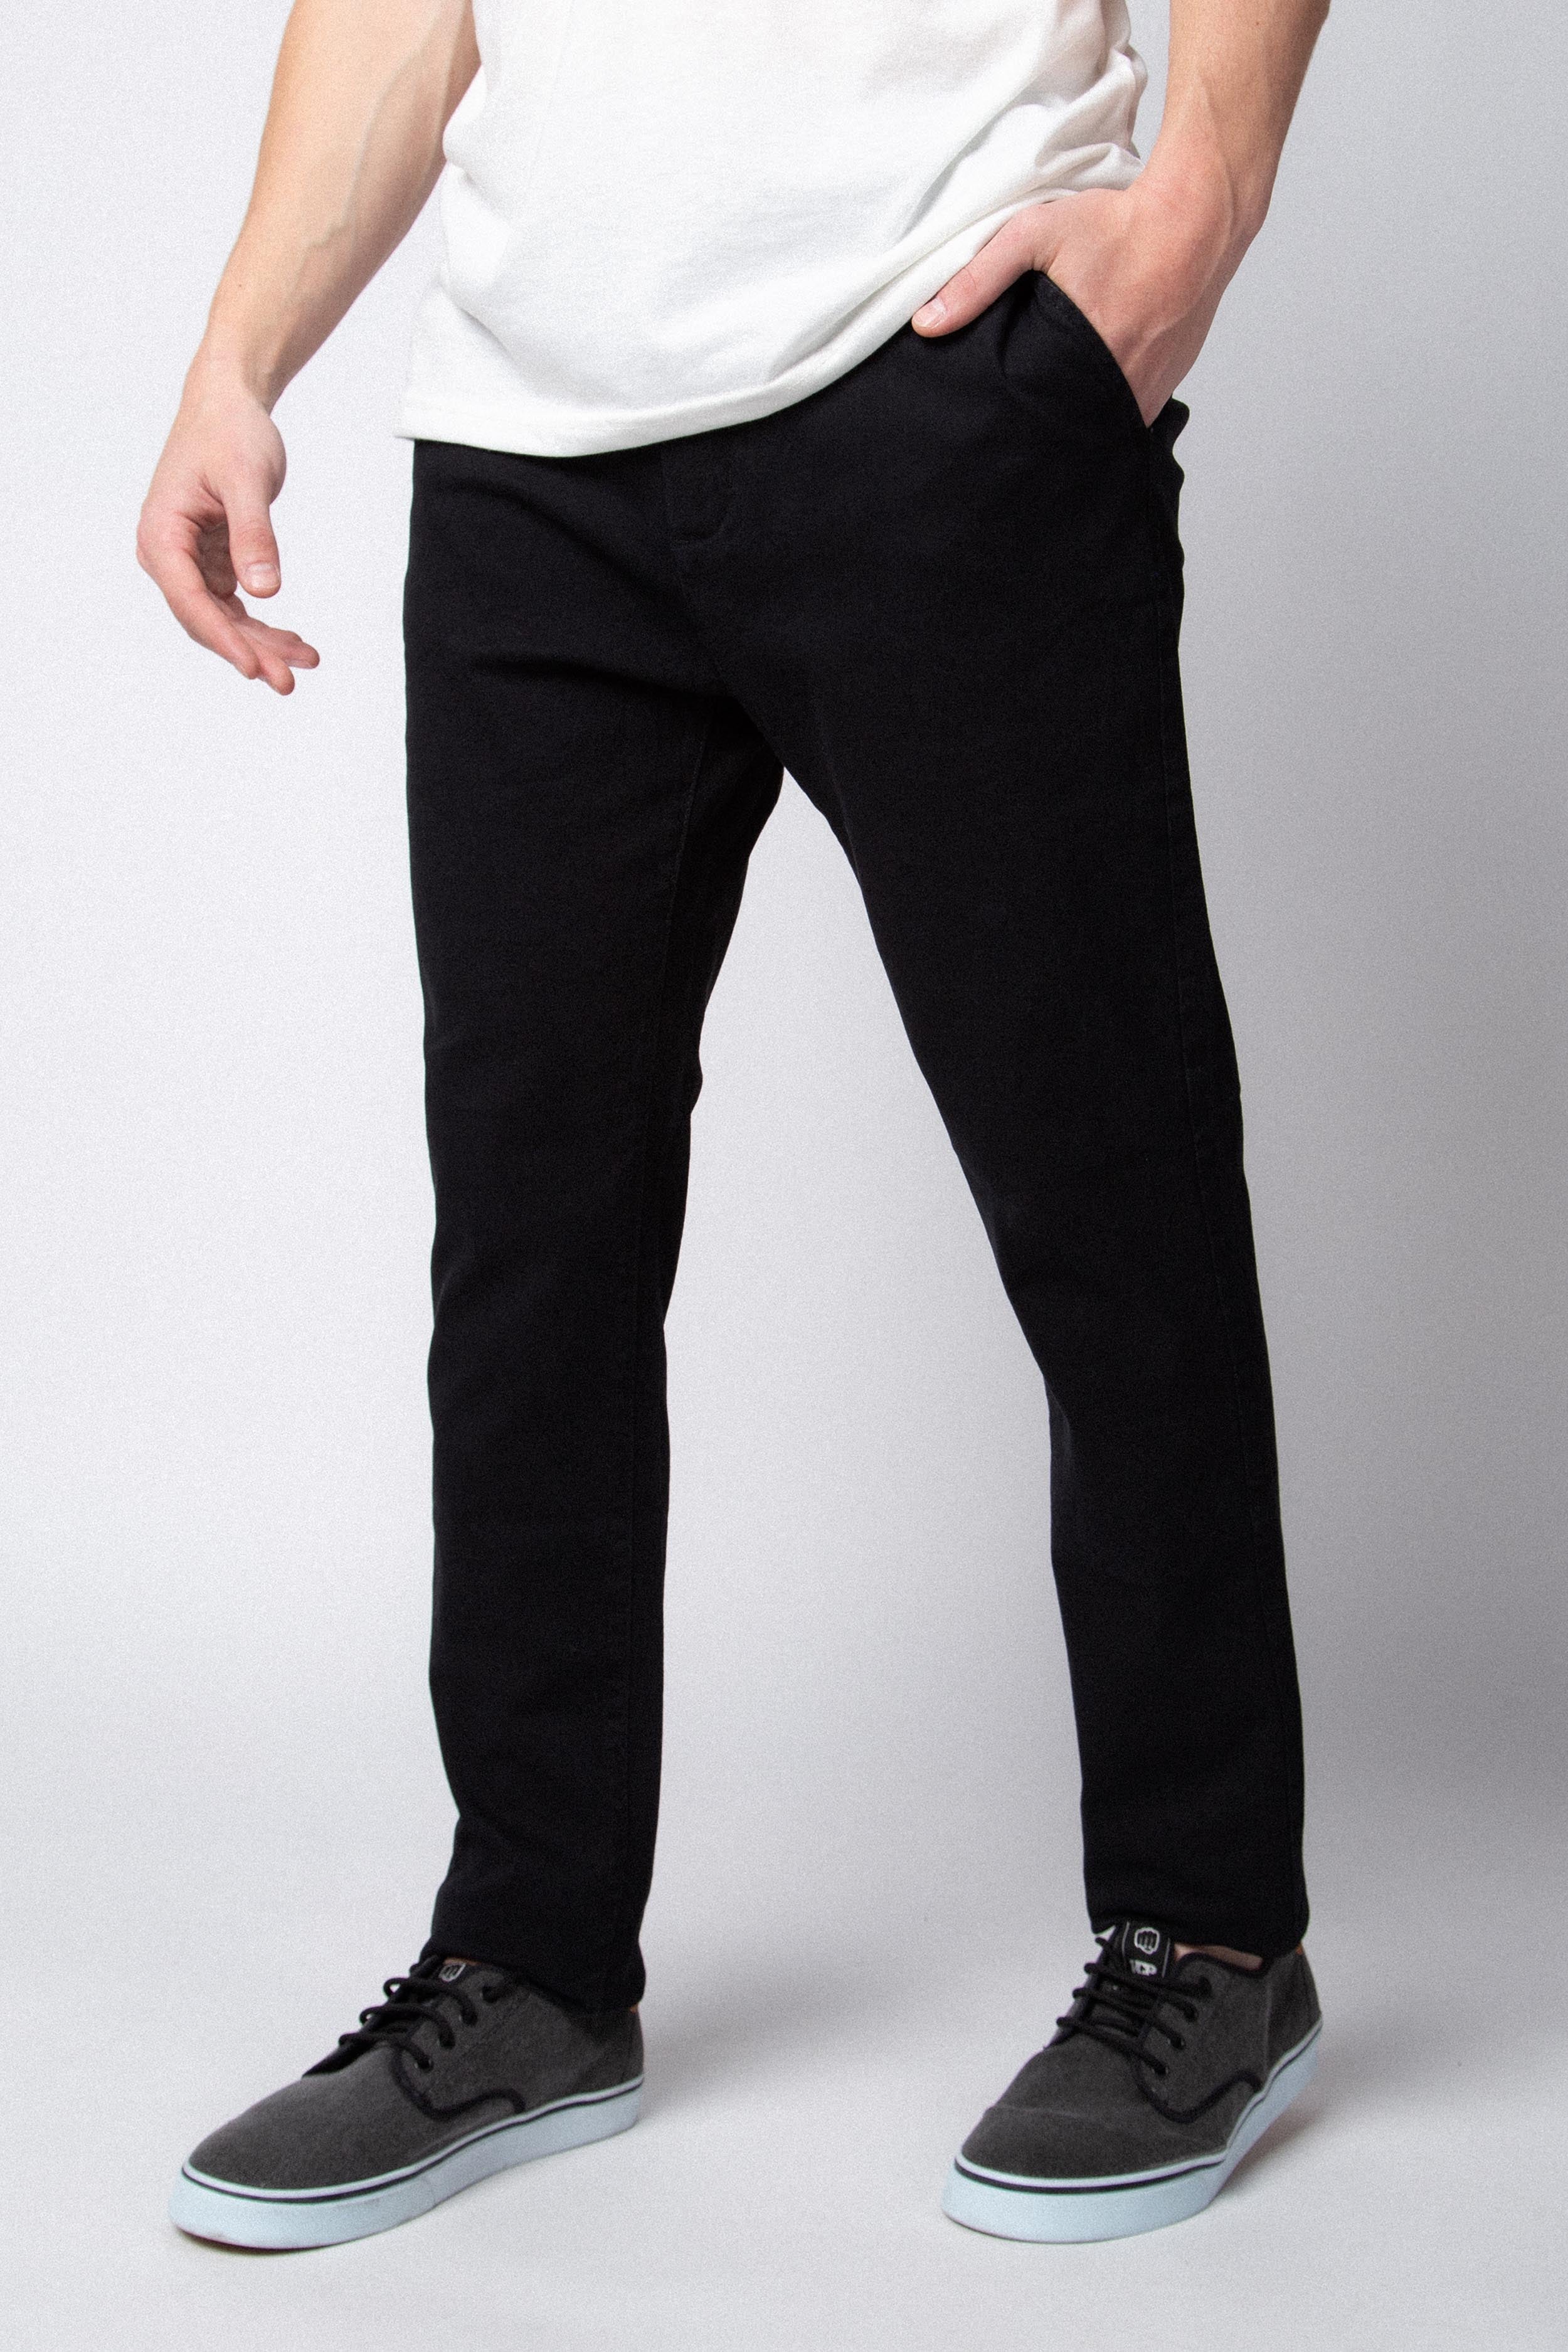 Pantalon Chino Royal Negro